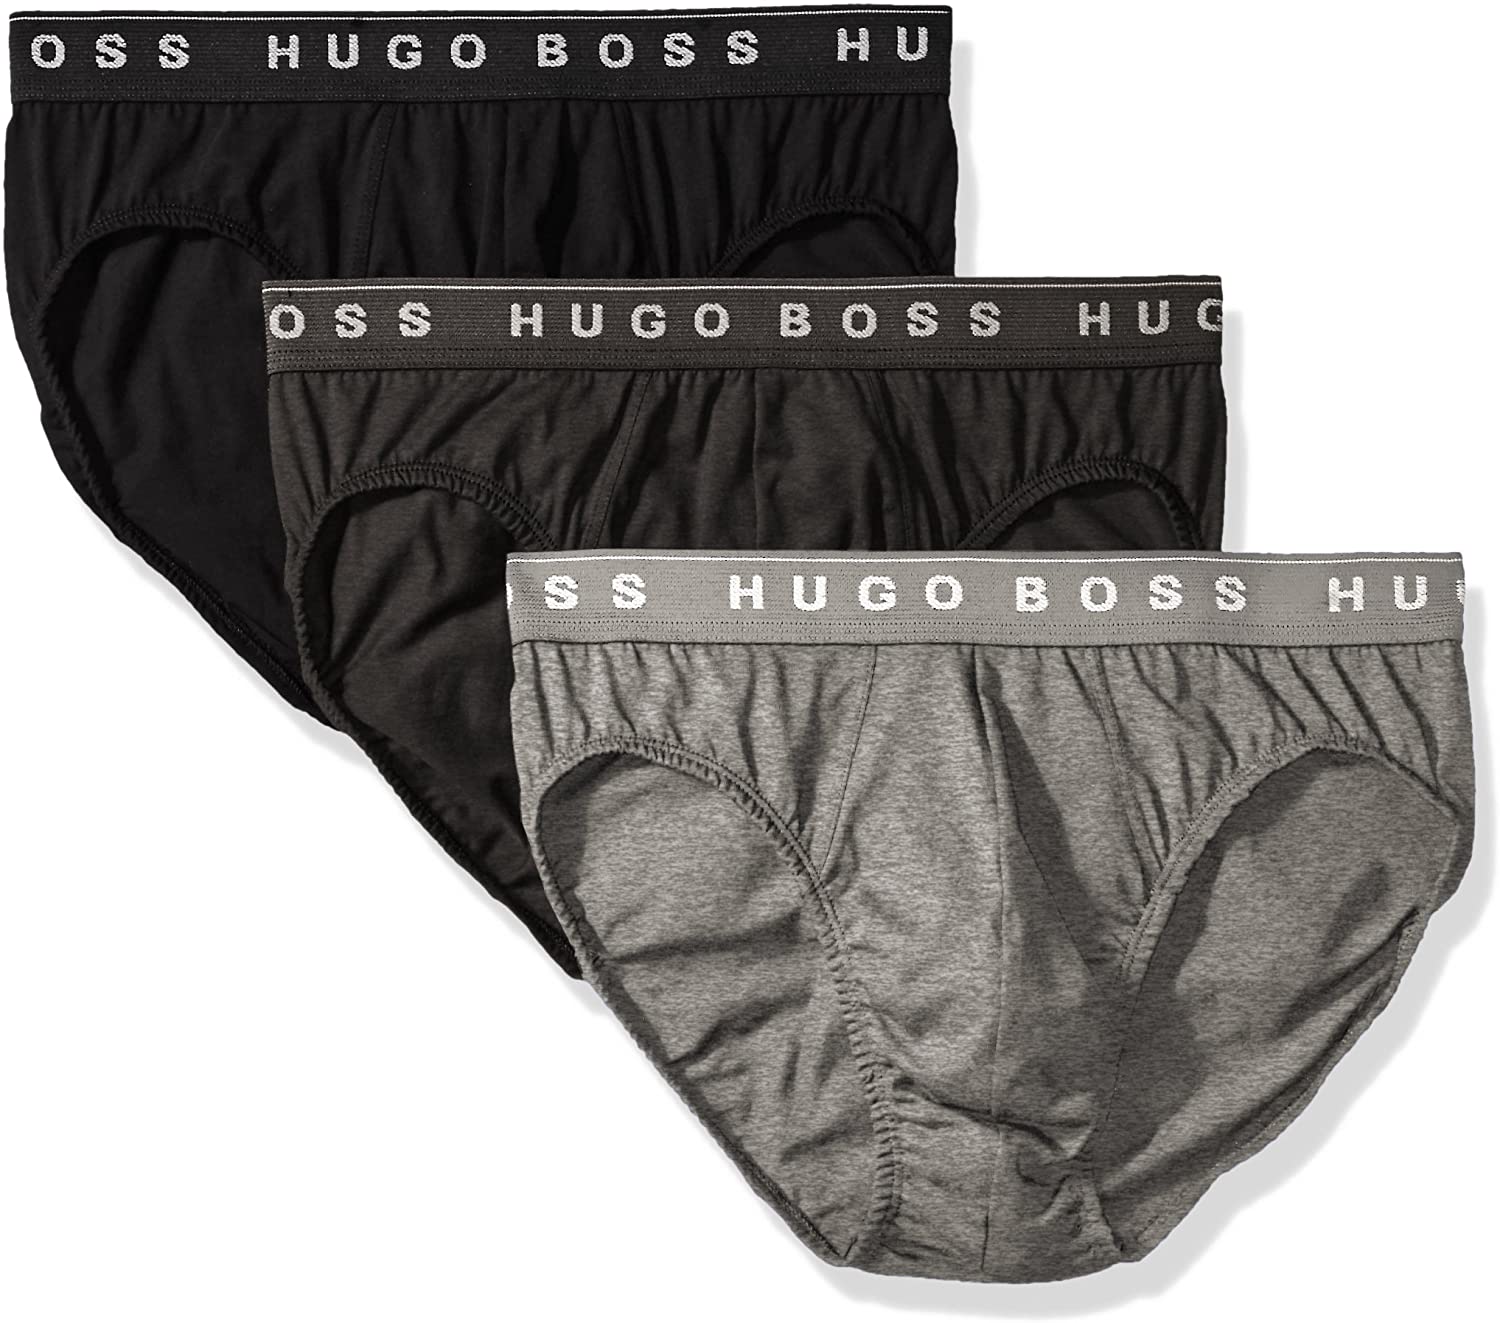 Boss Hugo Boss 50236731 Men's Cotton 3 Pack Mini Brief | eBay